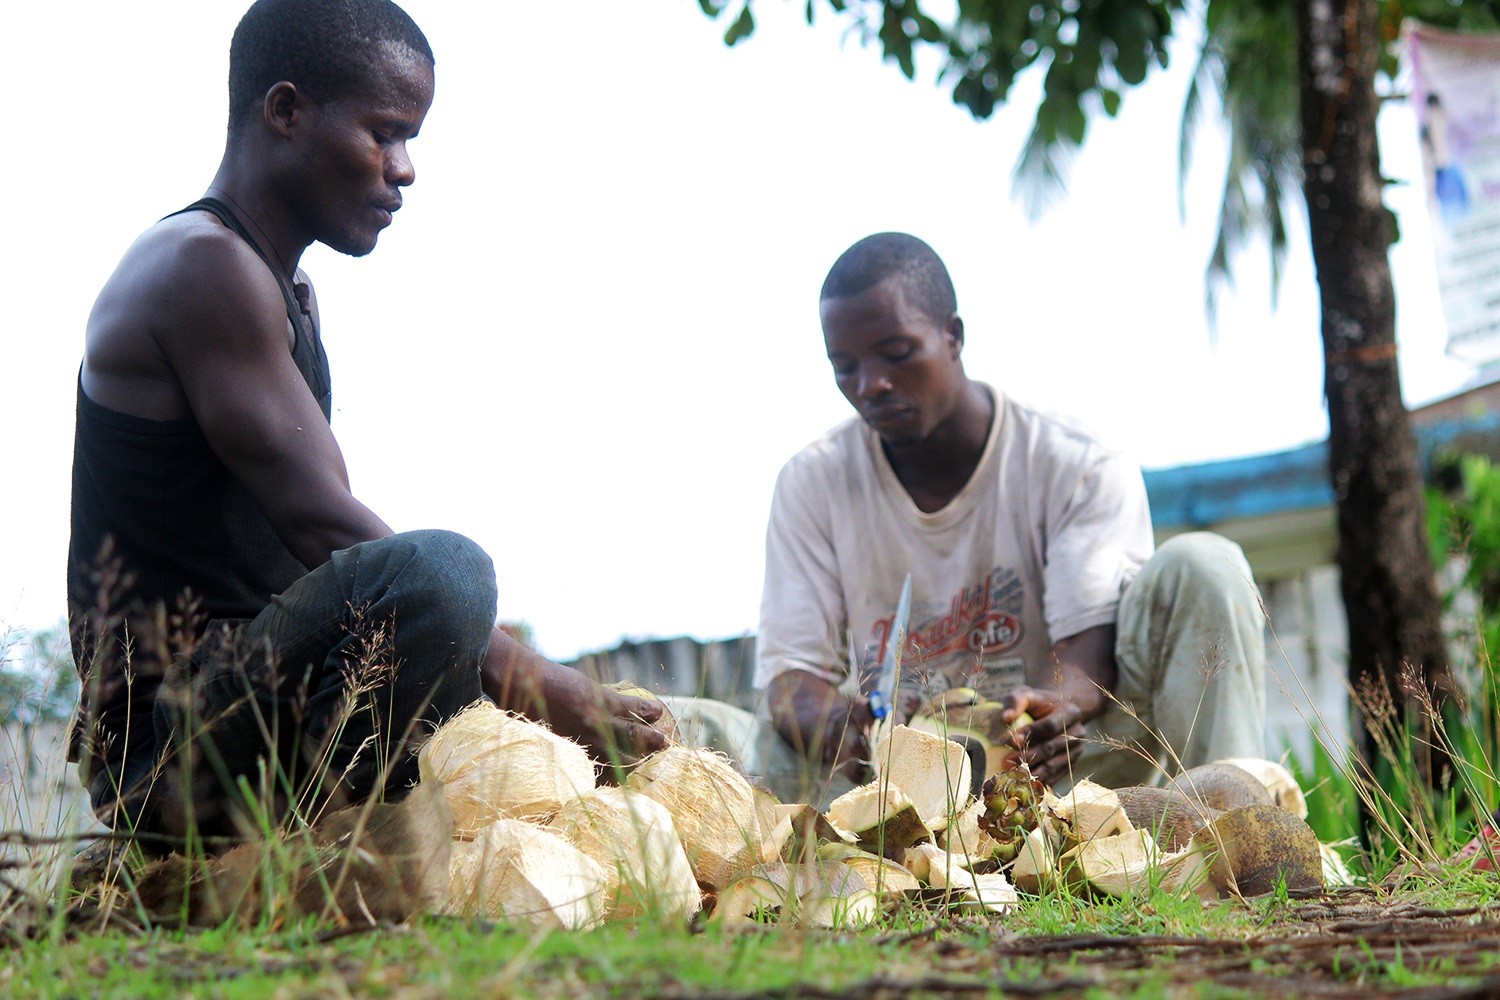 Making-coconut-oil-Liberia-photo